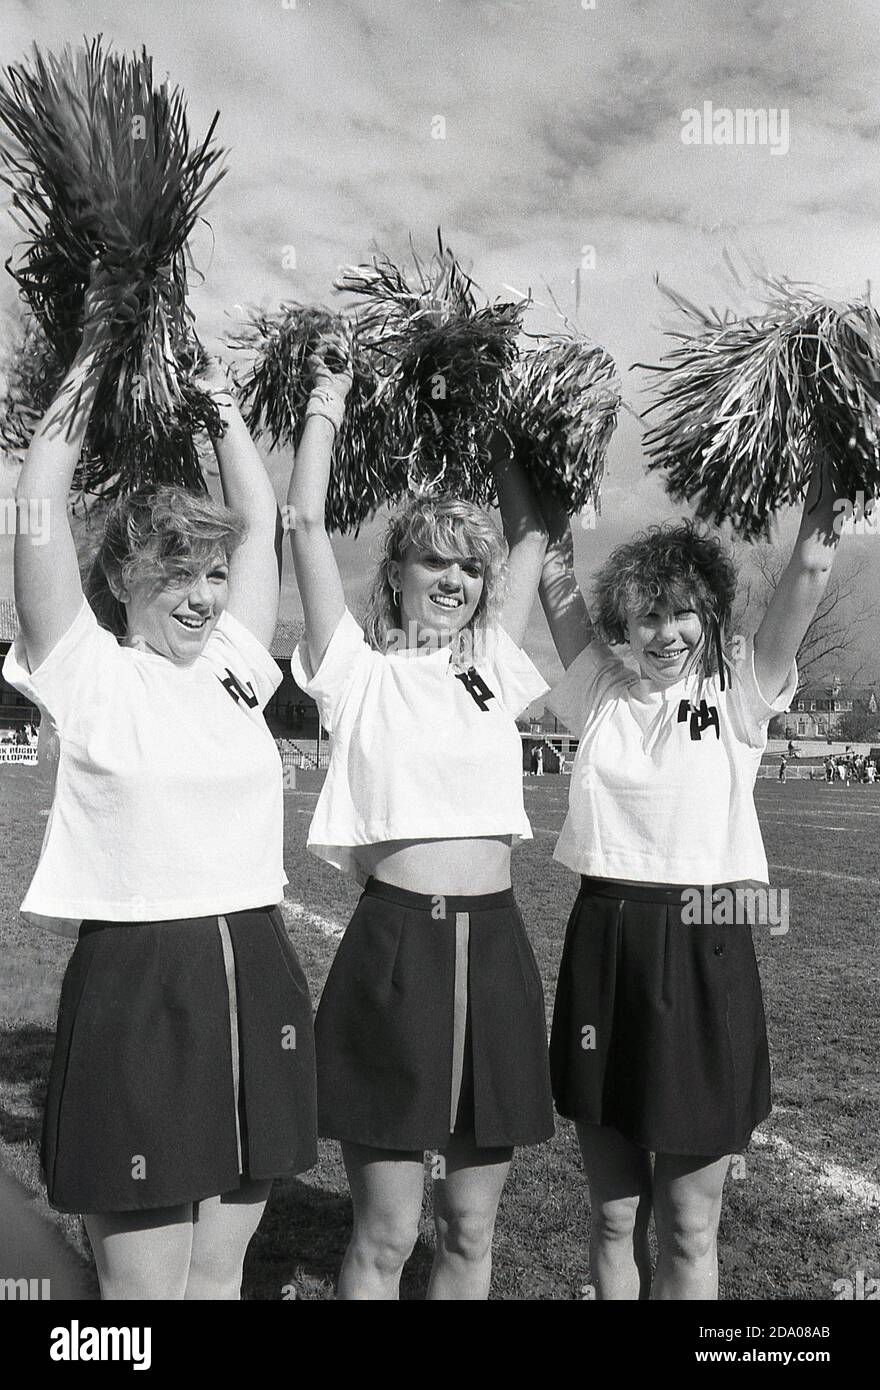 1980 dallas cowboys cheerleaders